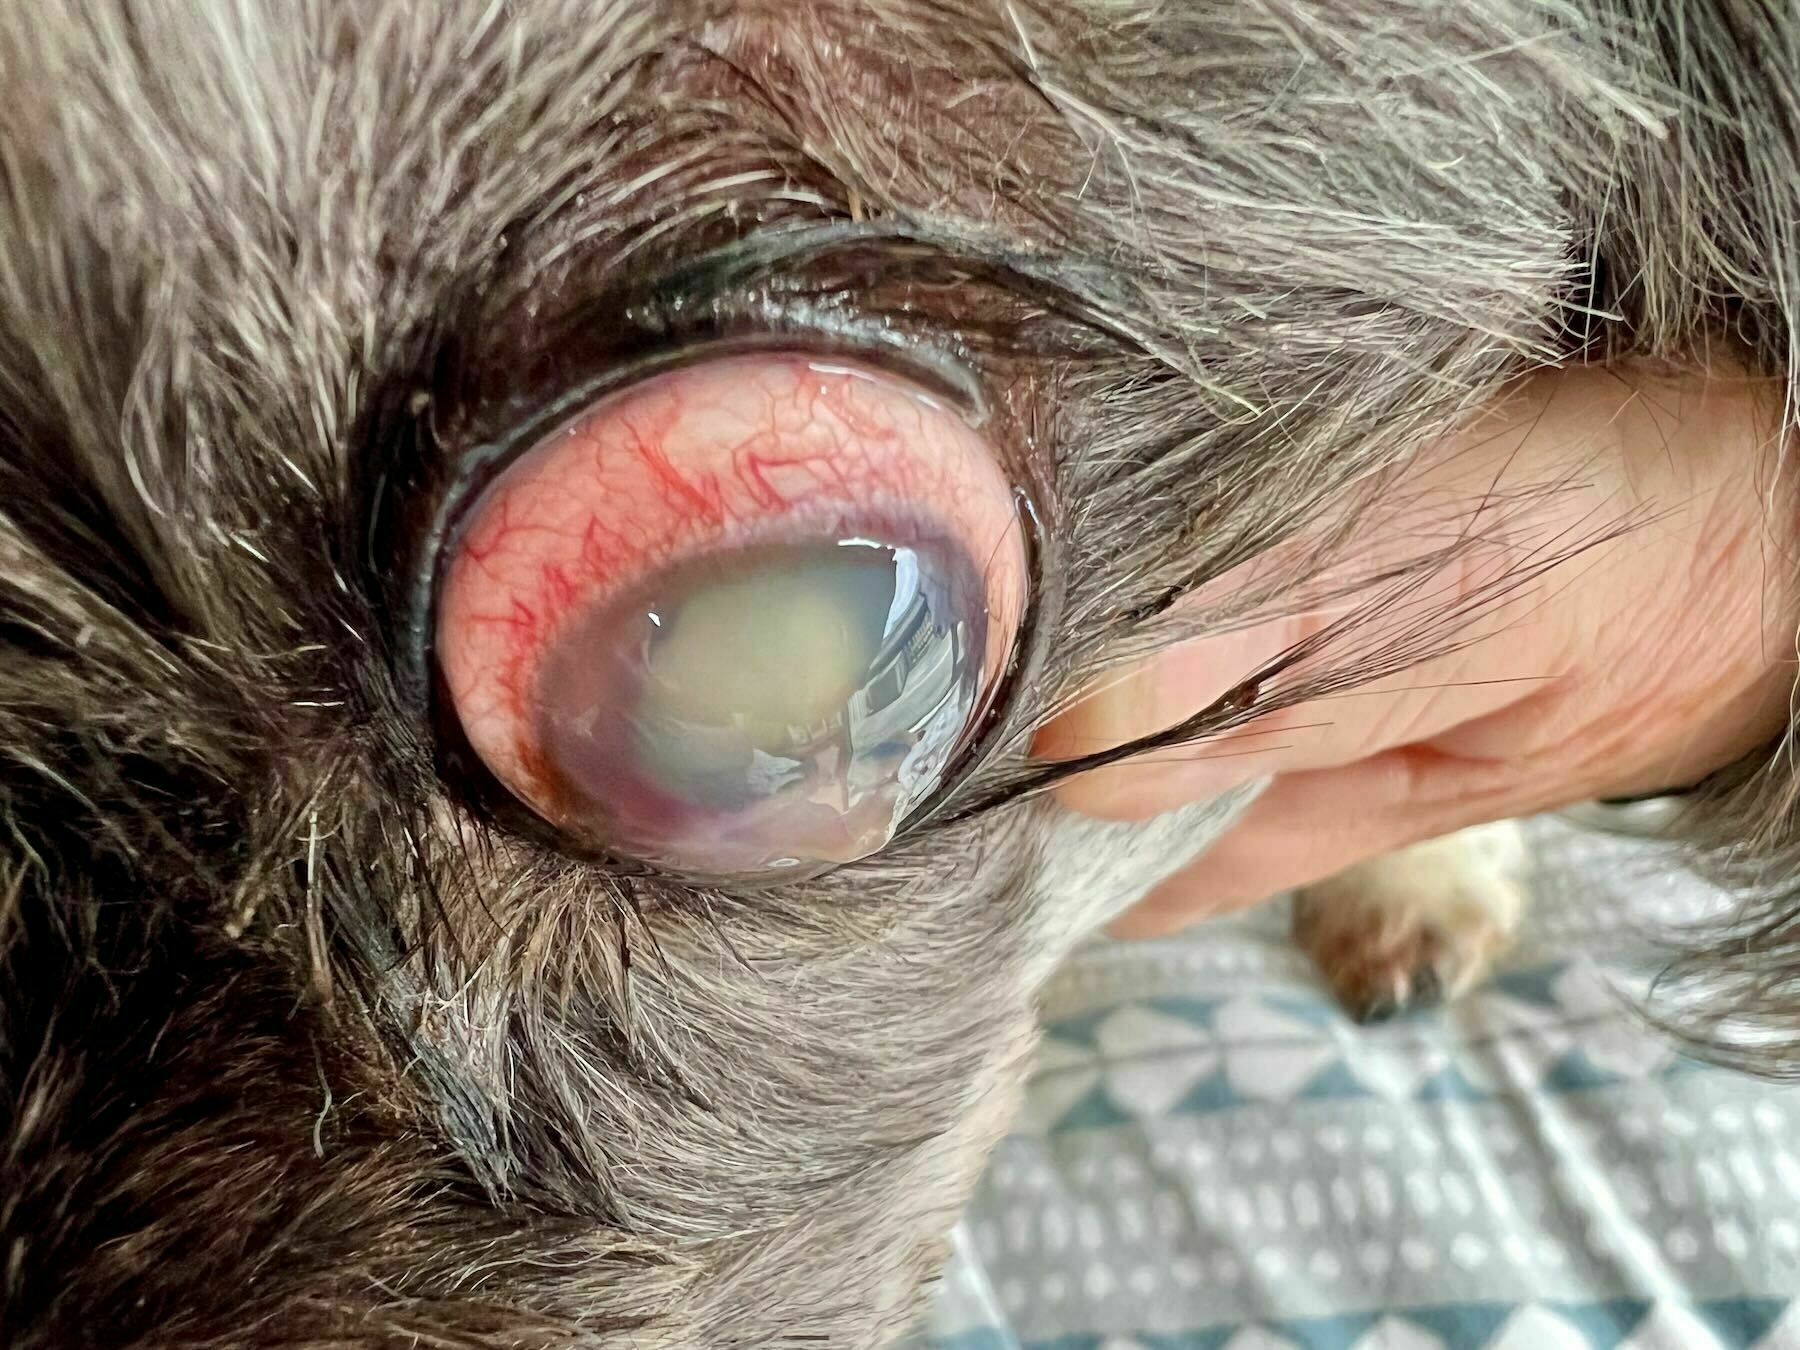 Prominent blister on dog eyeball. 